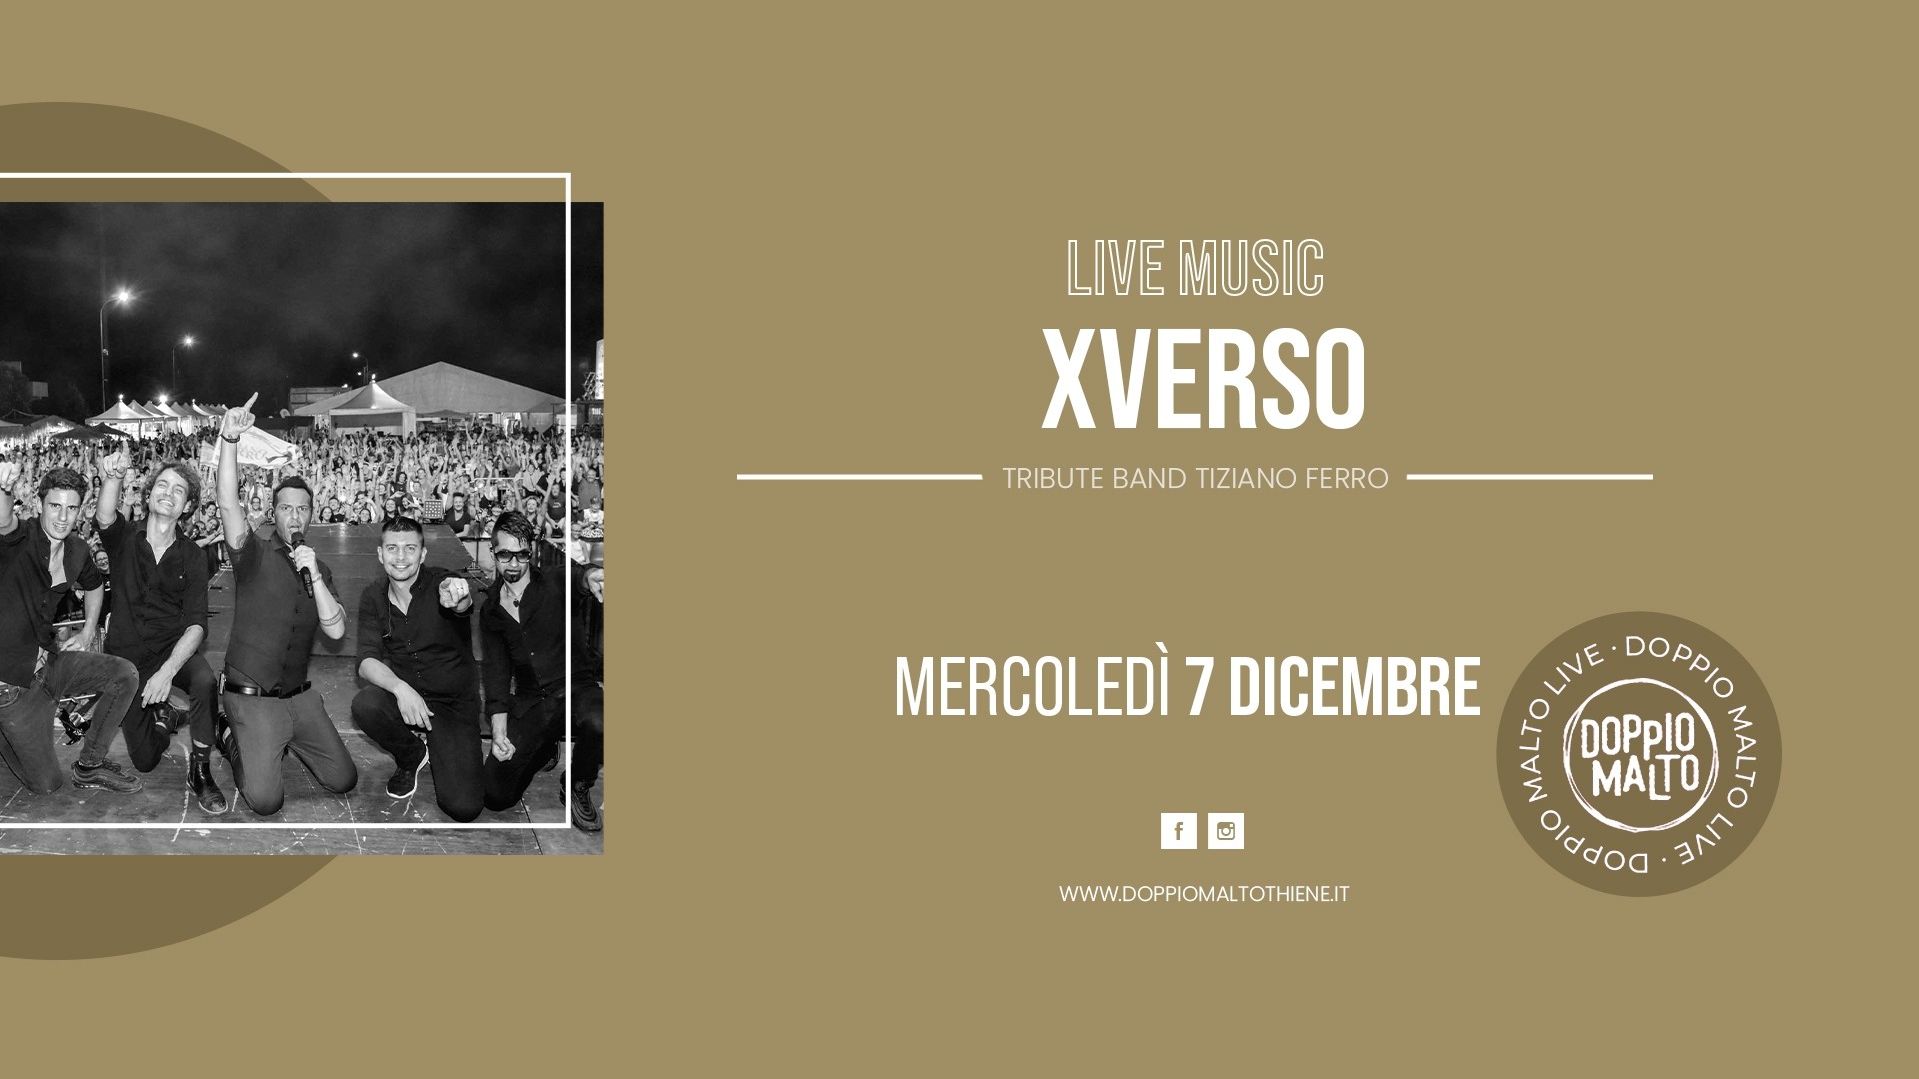 Xverso - Tribute Band Tiziano Ferro